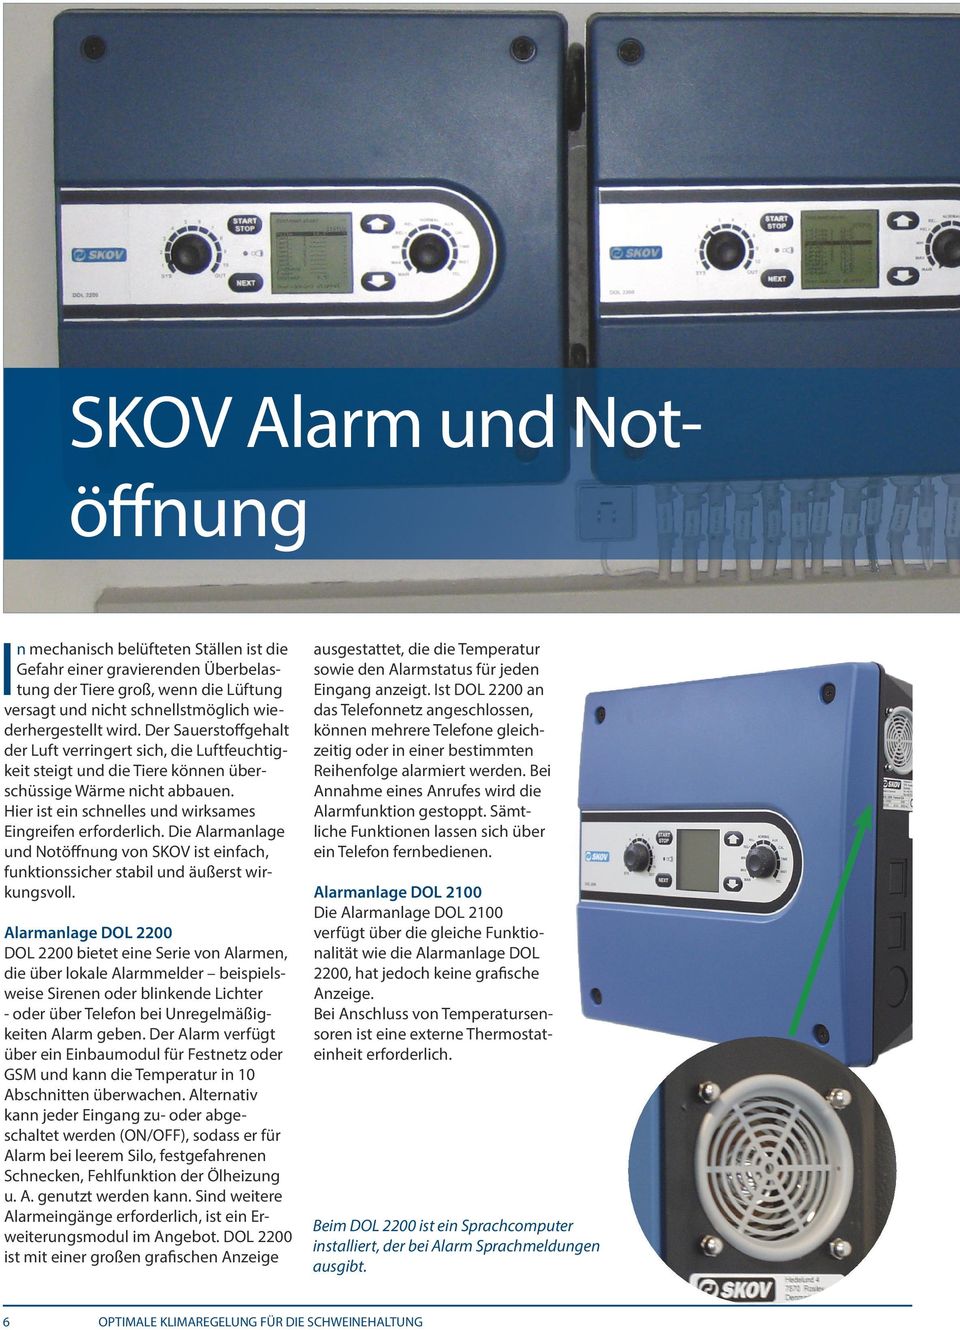 Die Alarmanlage und Notöffnung von SKOV ist einfach, funktionssicher stabil und äußerst wirkungsvoll.